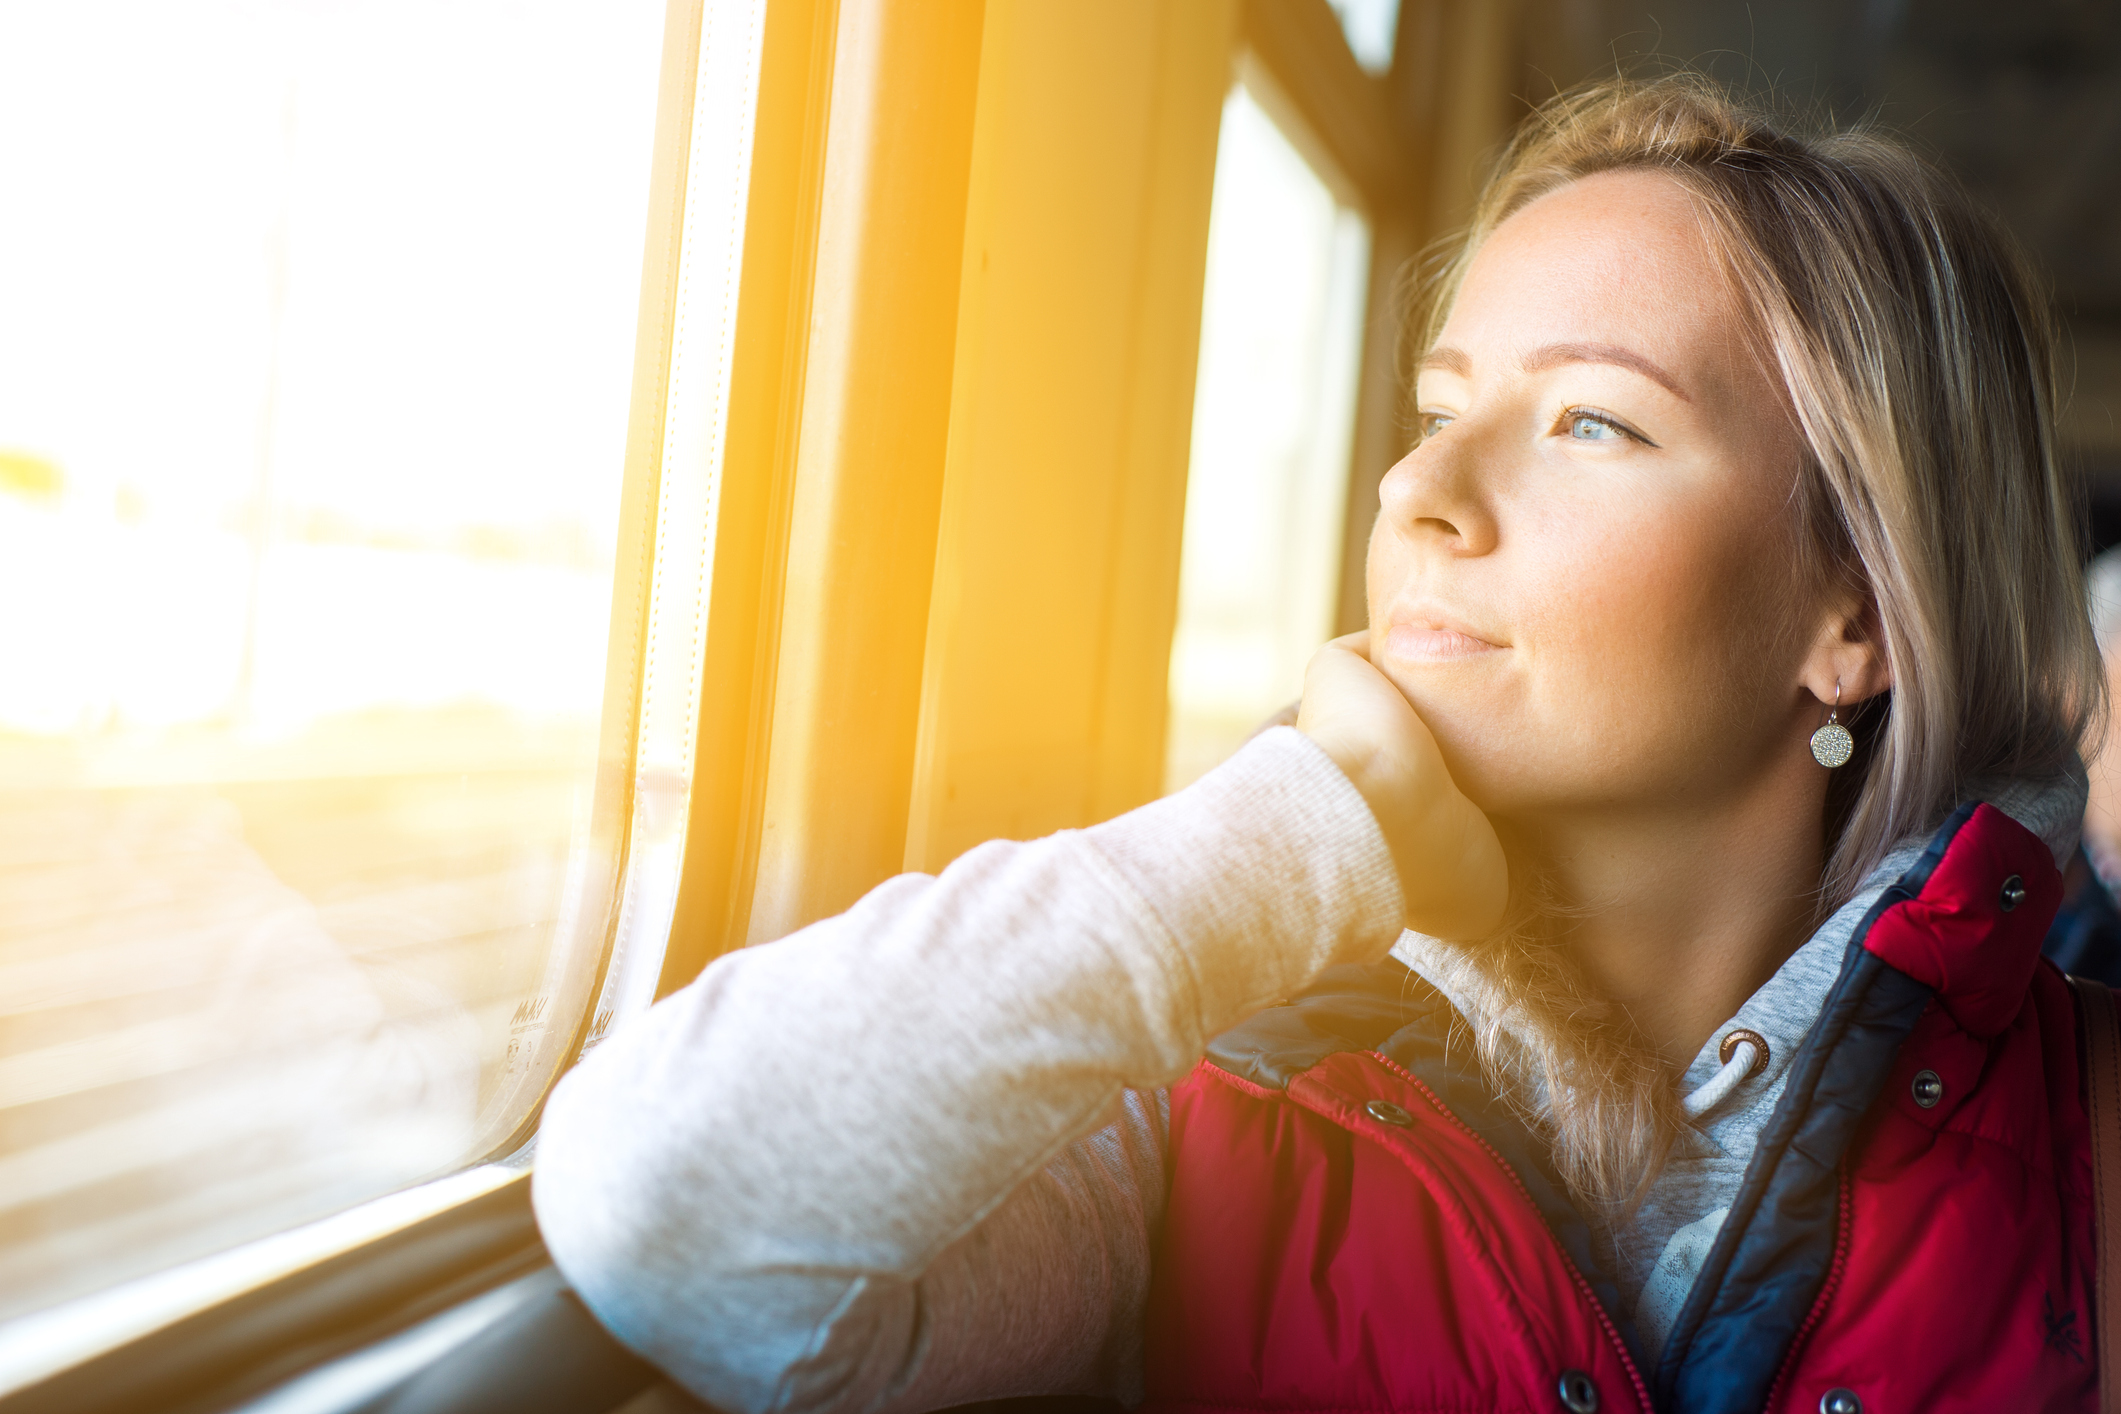 Chica mirando en el tren